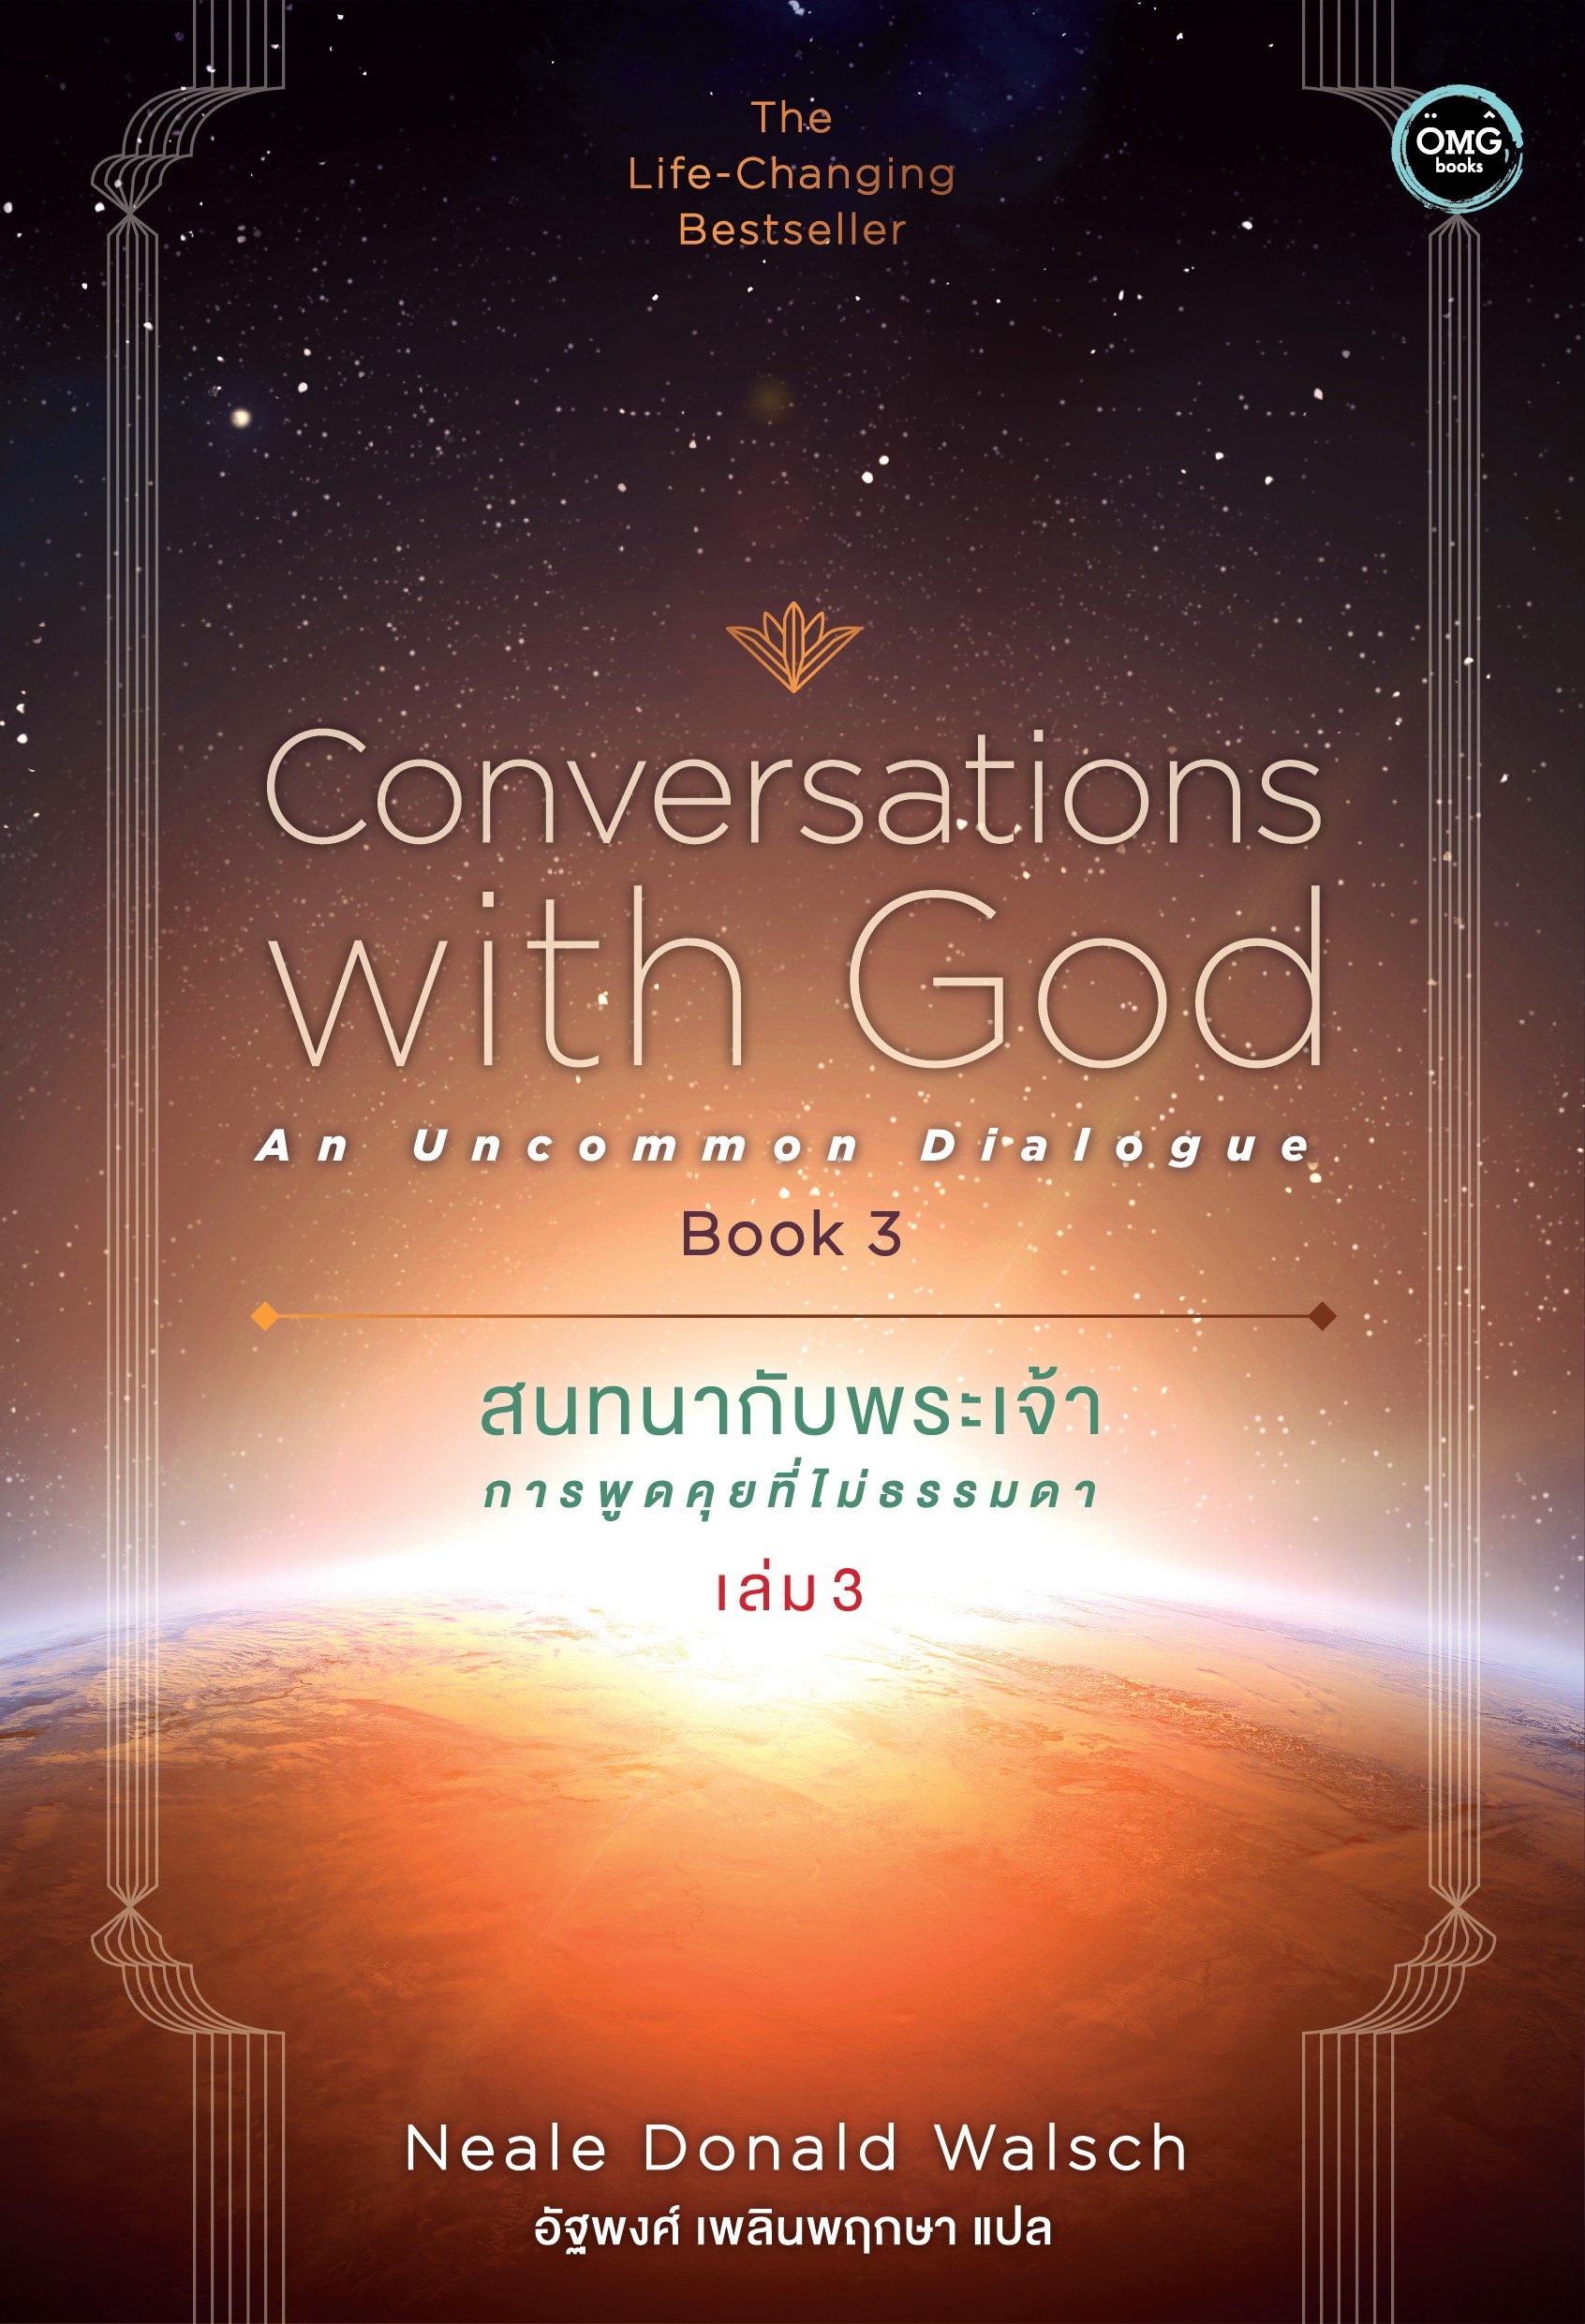 สนทนากับพระเจ้า การพูดคุยที่ไม่ธรรมดา เล่ม 3 (Conversations with God : An Uncommon Dialogue Book 3) Neale Donald Walsch